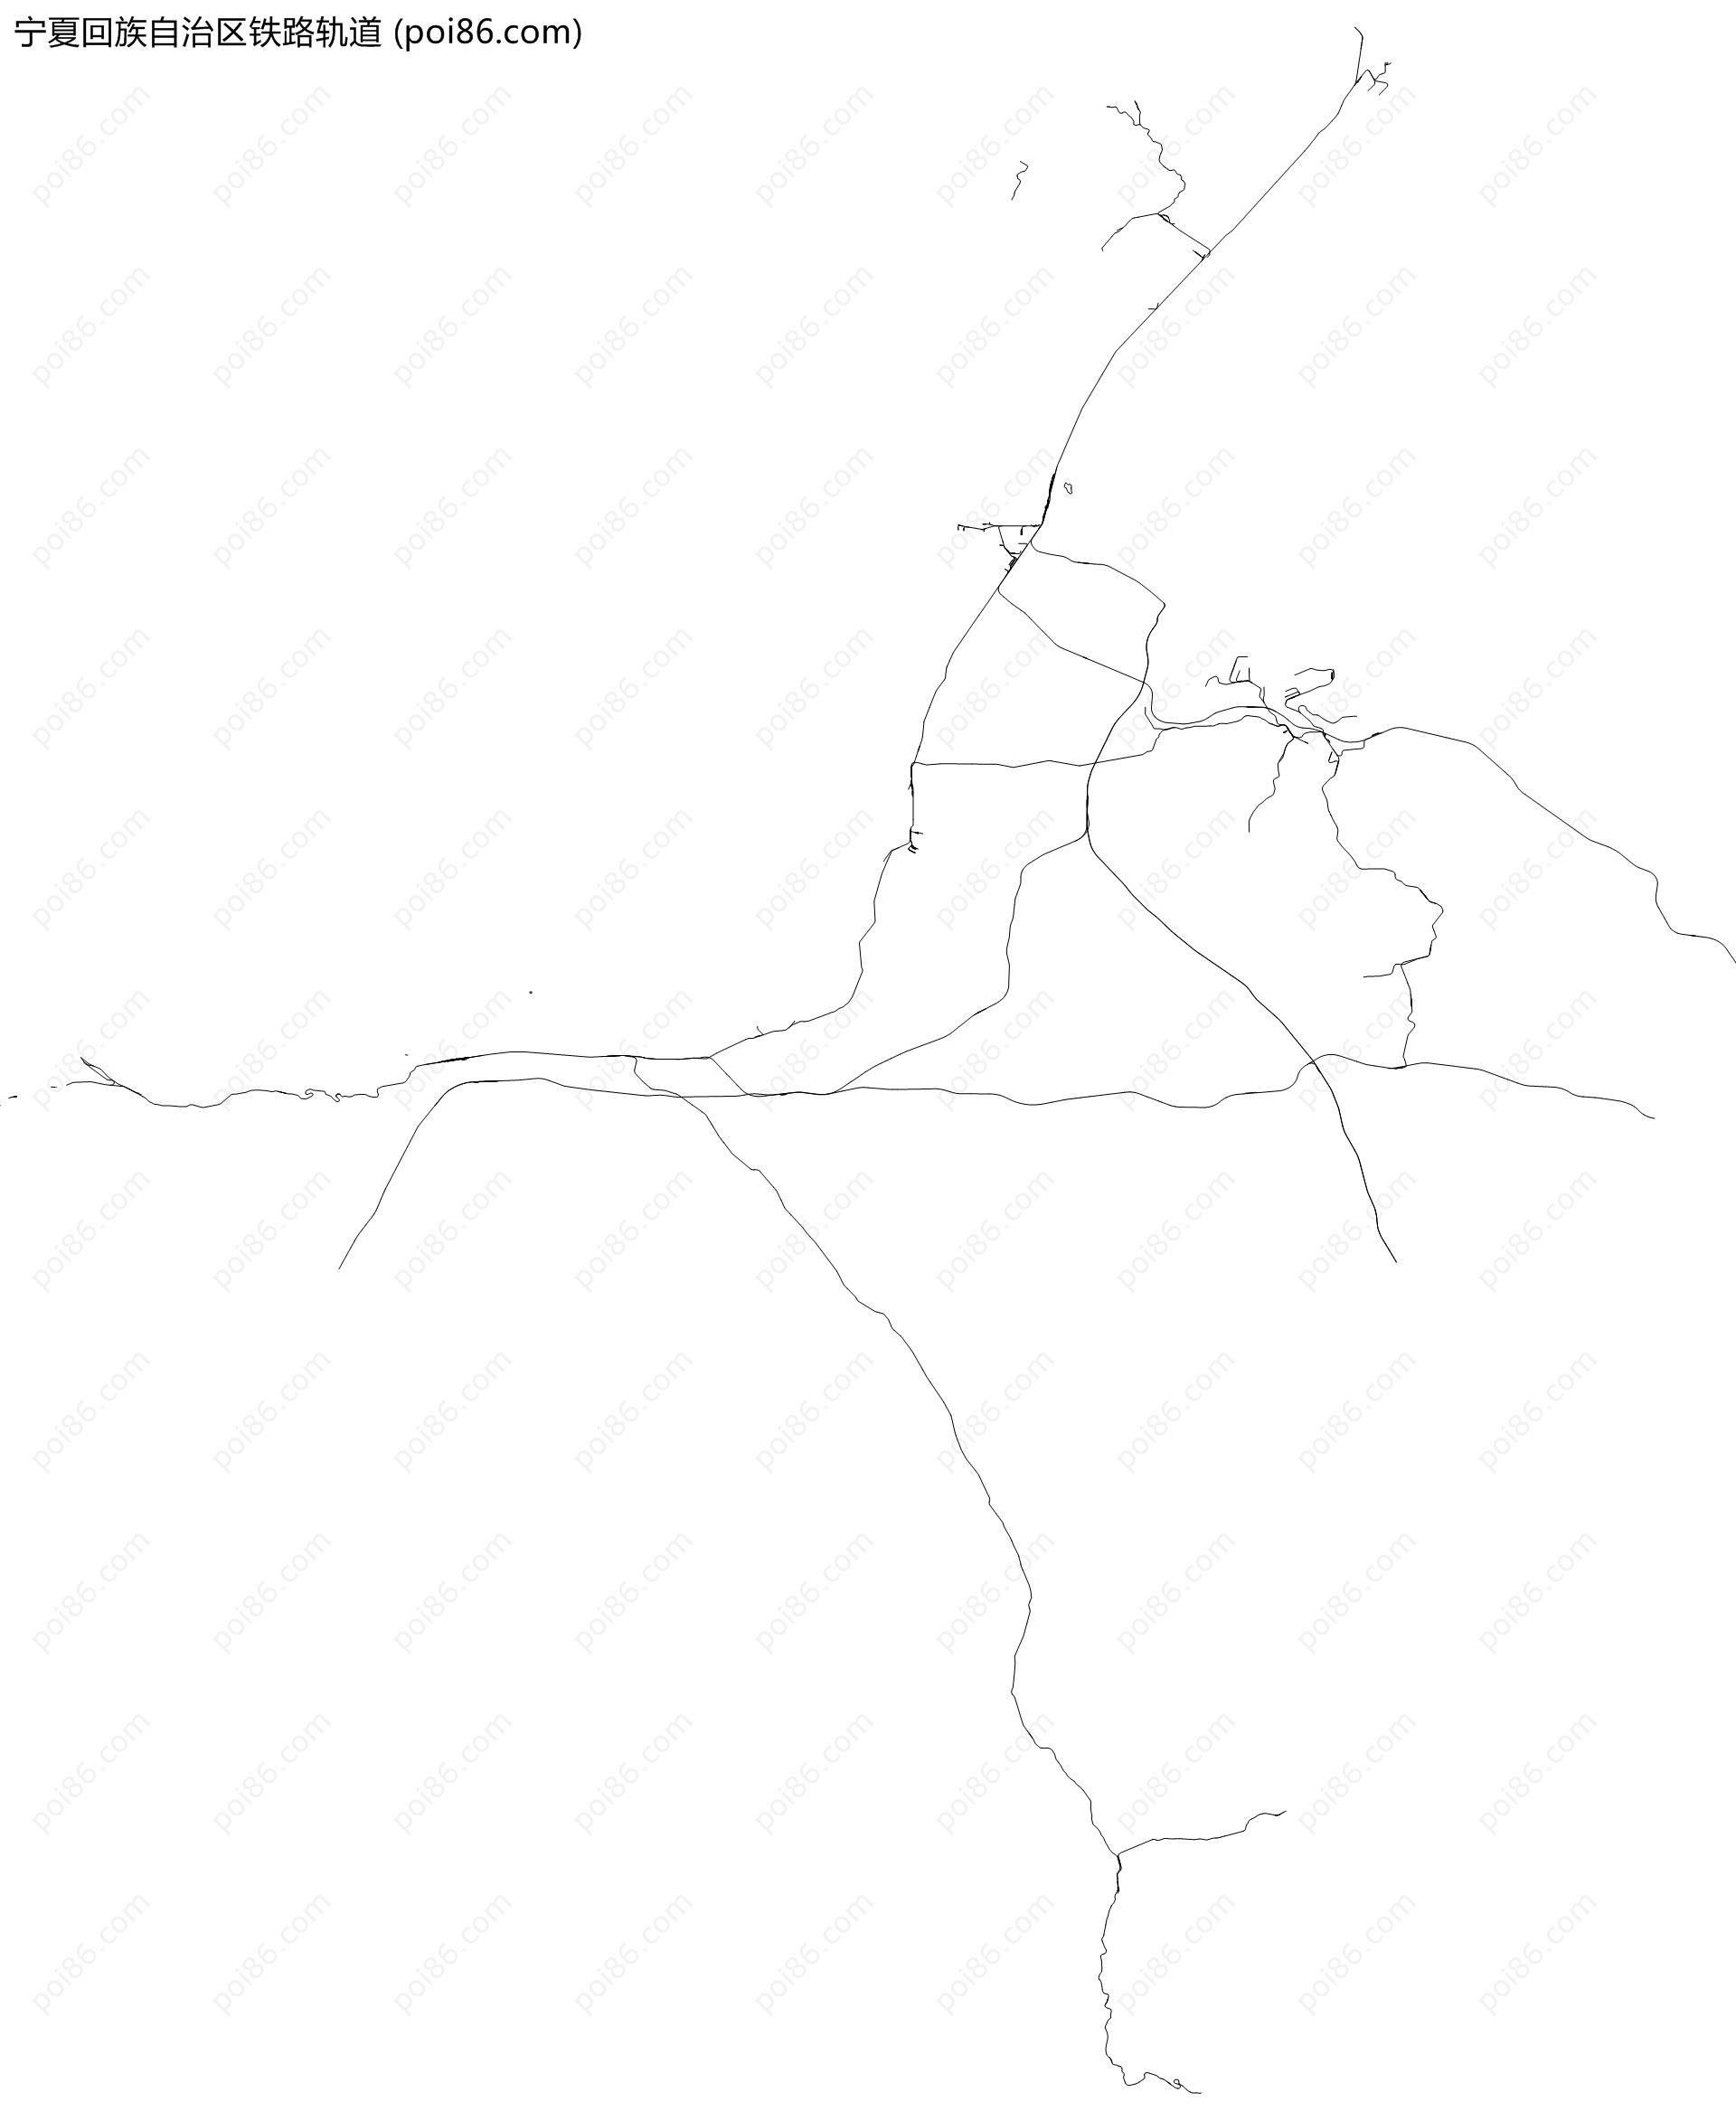 宁夏回族自治区铁路轨道地图